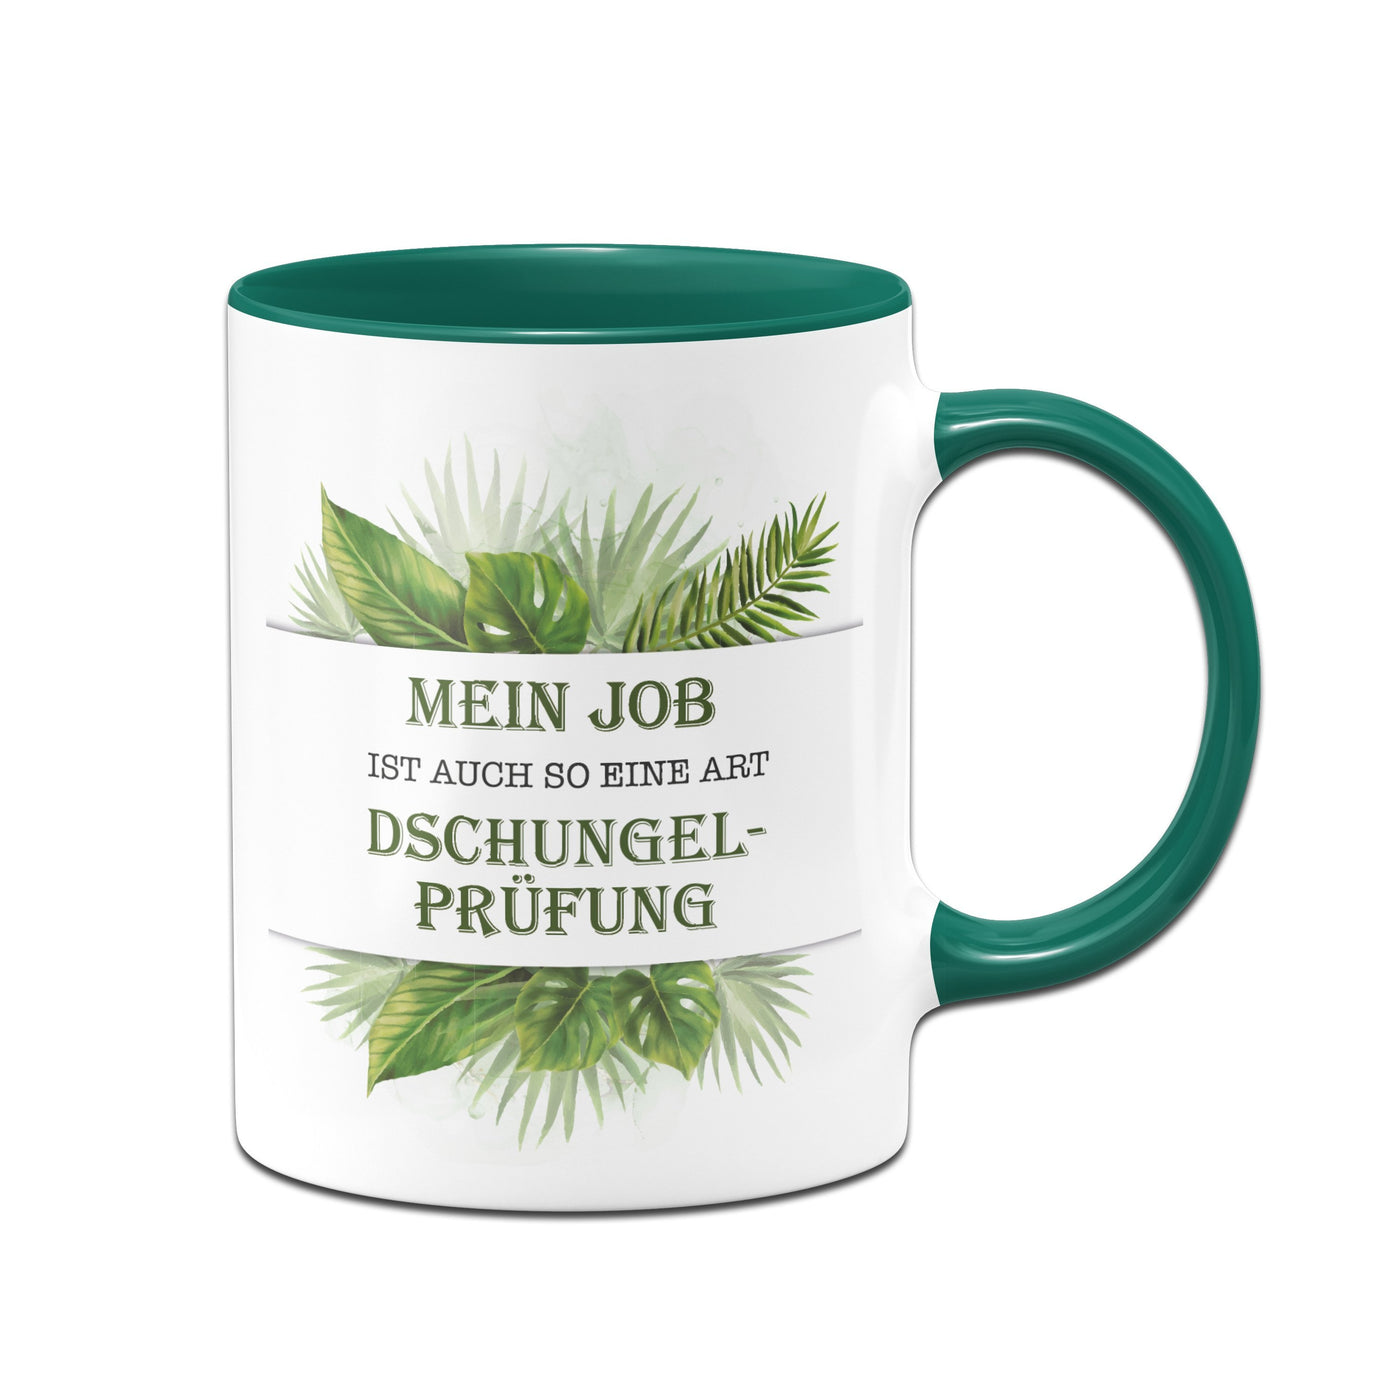 Bild: Tasse - Mein Job ist auch so eine Art Dschungelprüfung. Geschenkidee